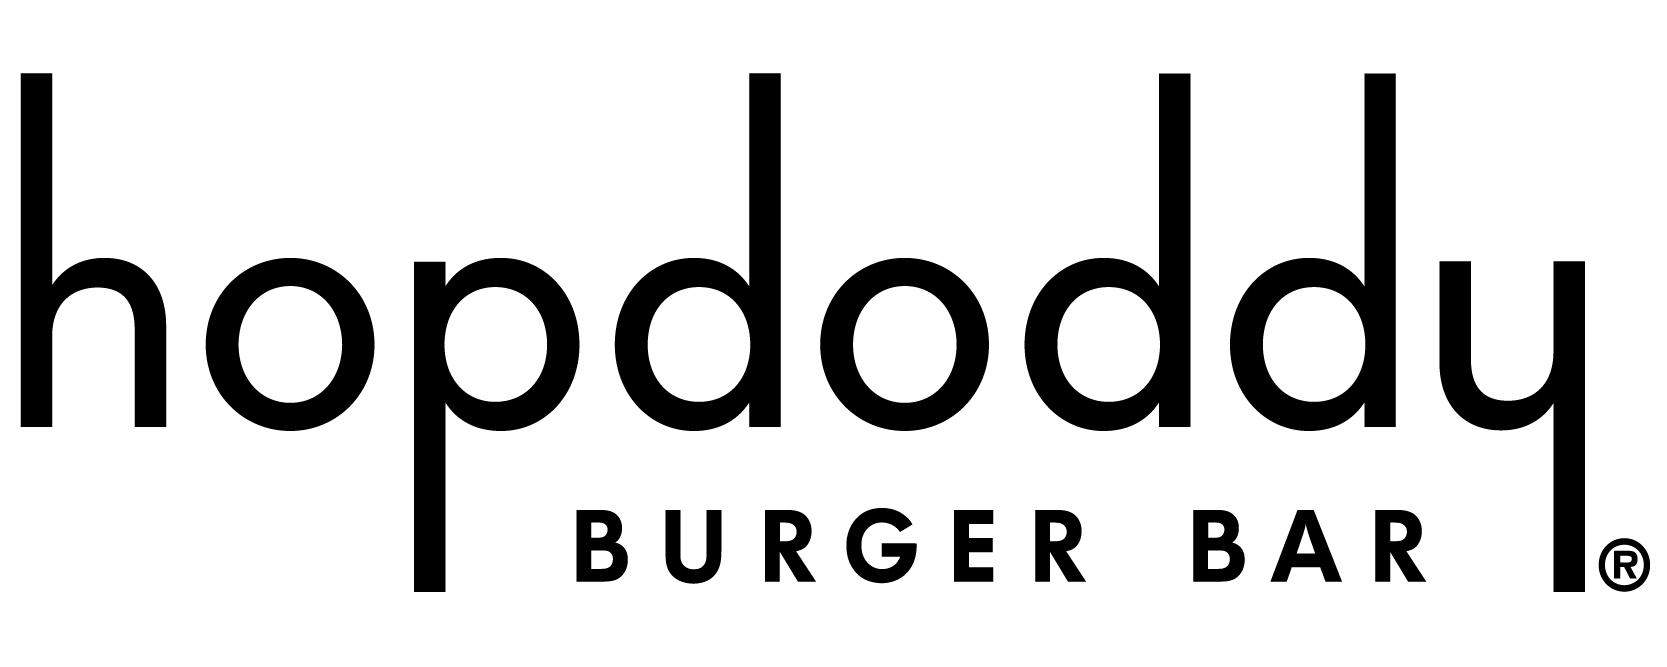 Hopdoddy Logo - Smart Horizons | Hopdoddy Burger Bar to Offer Career Online High ...